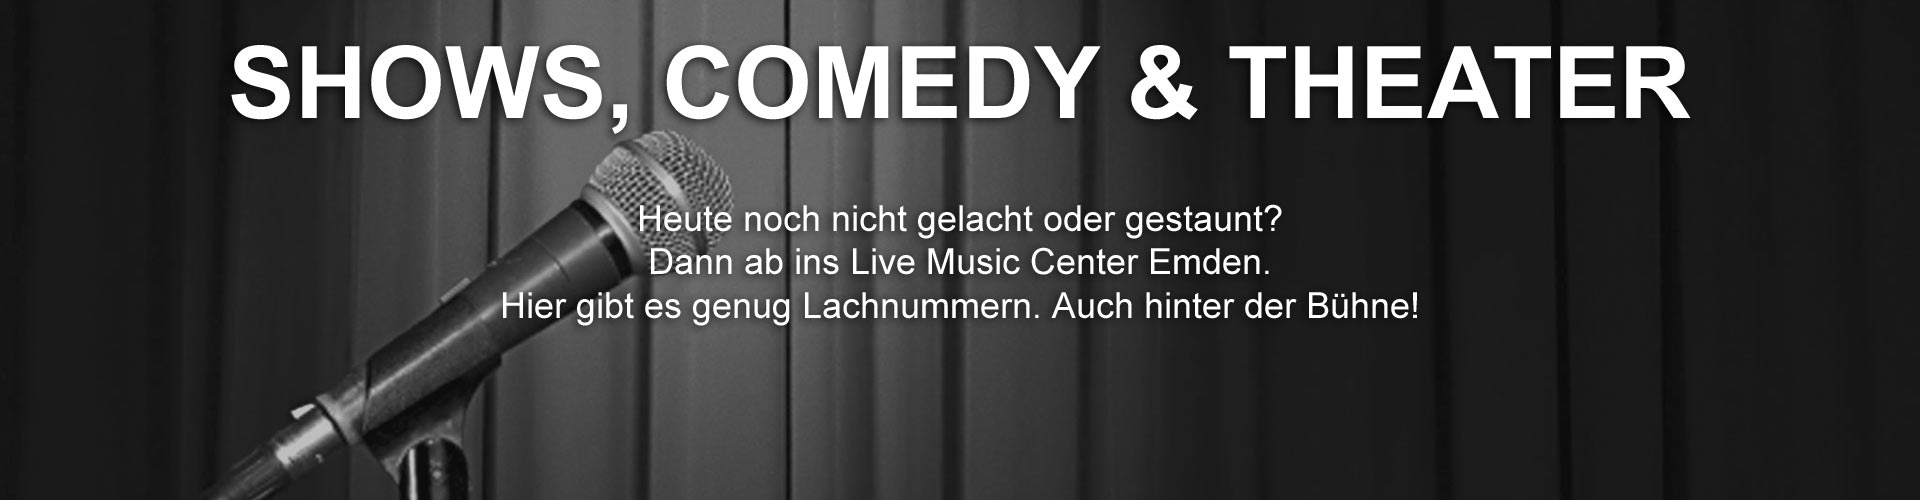 Shows - Comedy und Theater - Live Music Center Emden